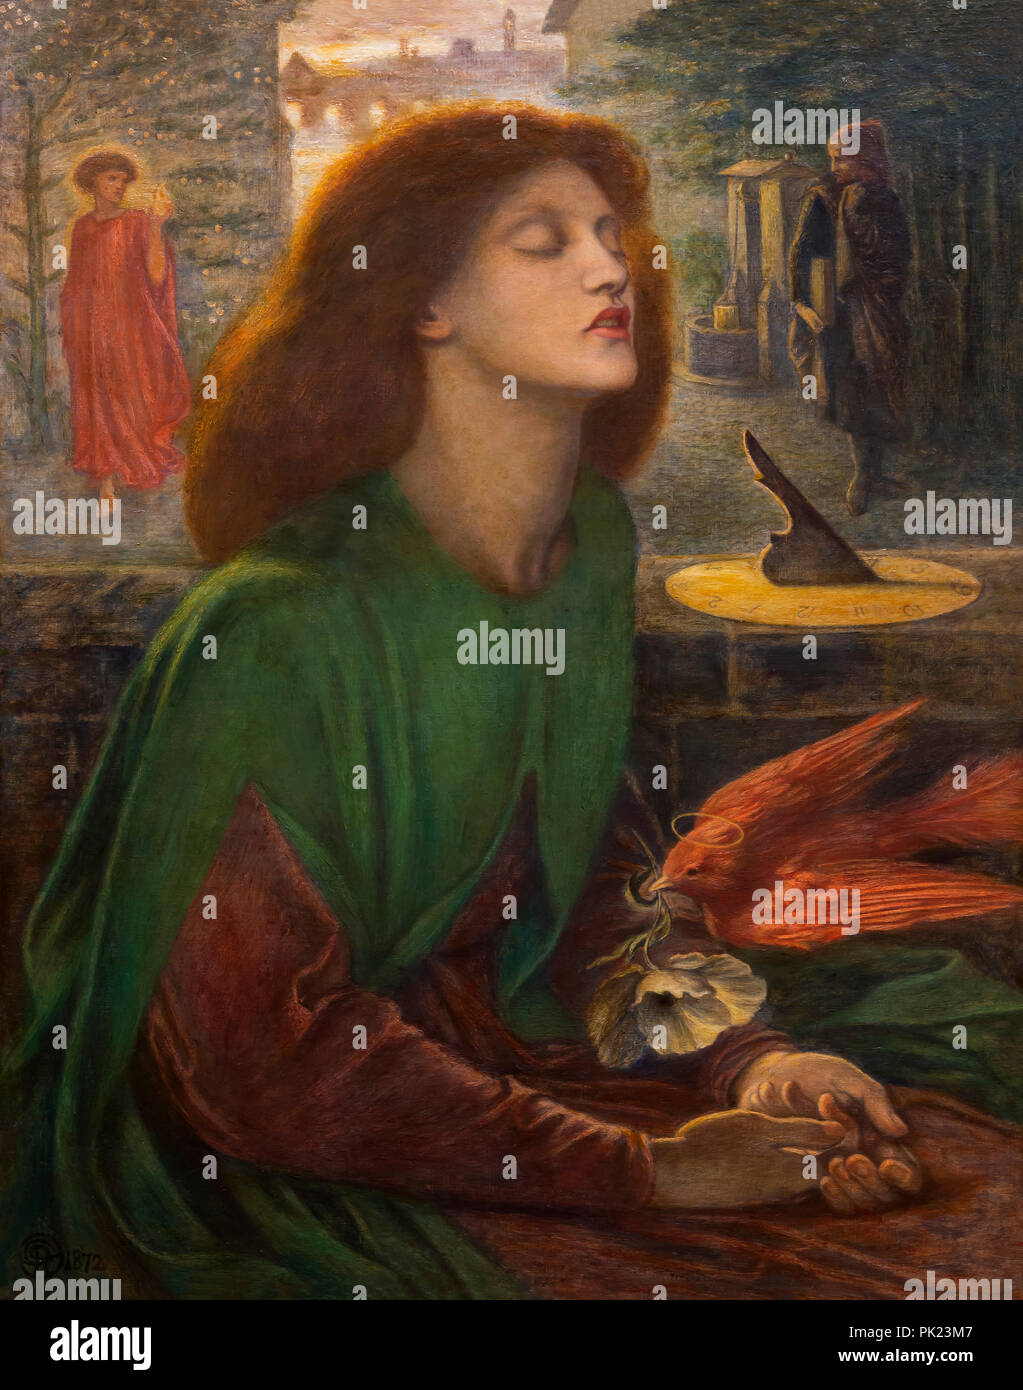 Beata Beatrix, Dante Gabriel Rossetti, 1871-1872, Art Institute of Chicago, Chicago, Illinois, USA, North America, Stock Photo